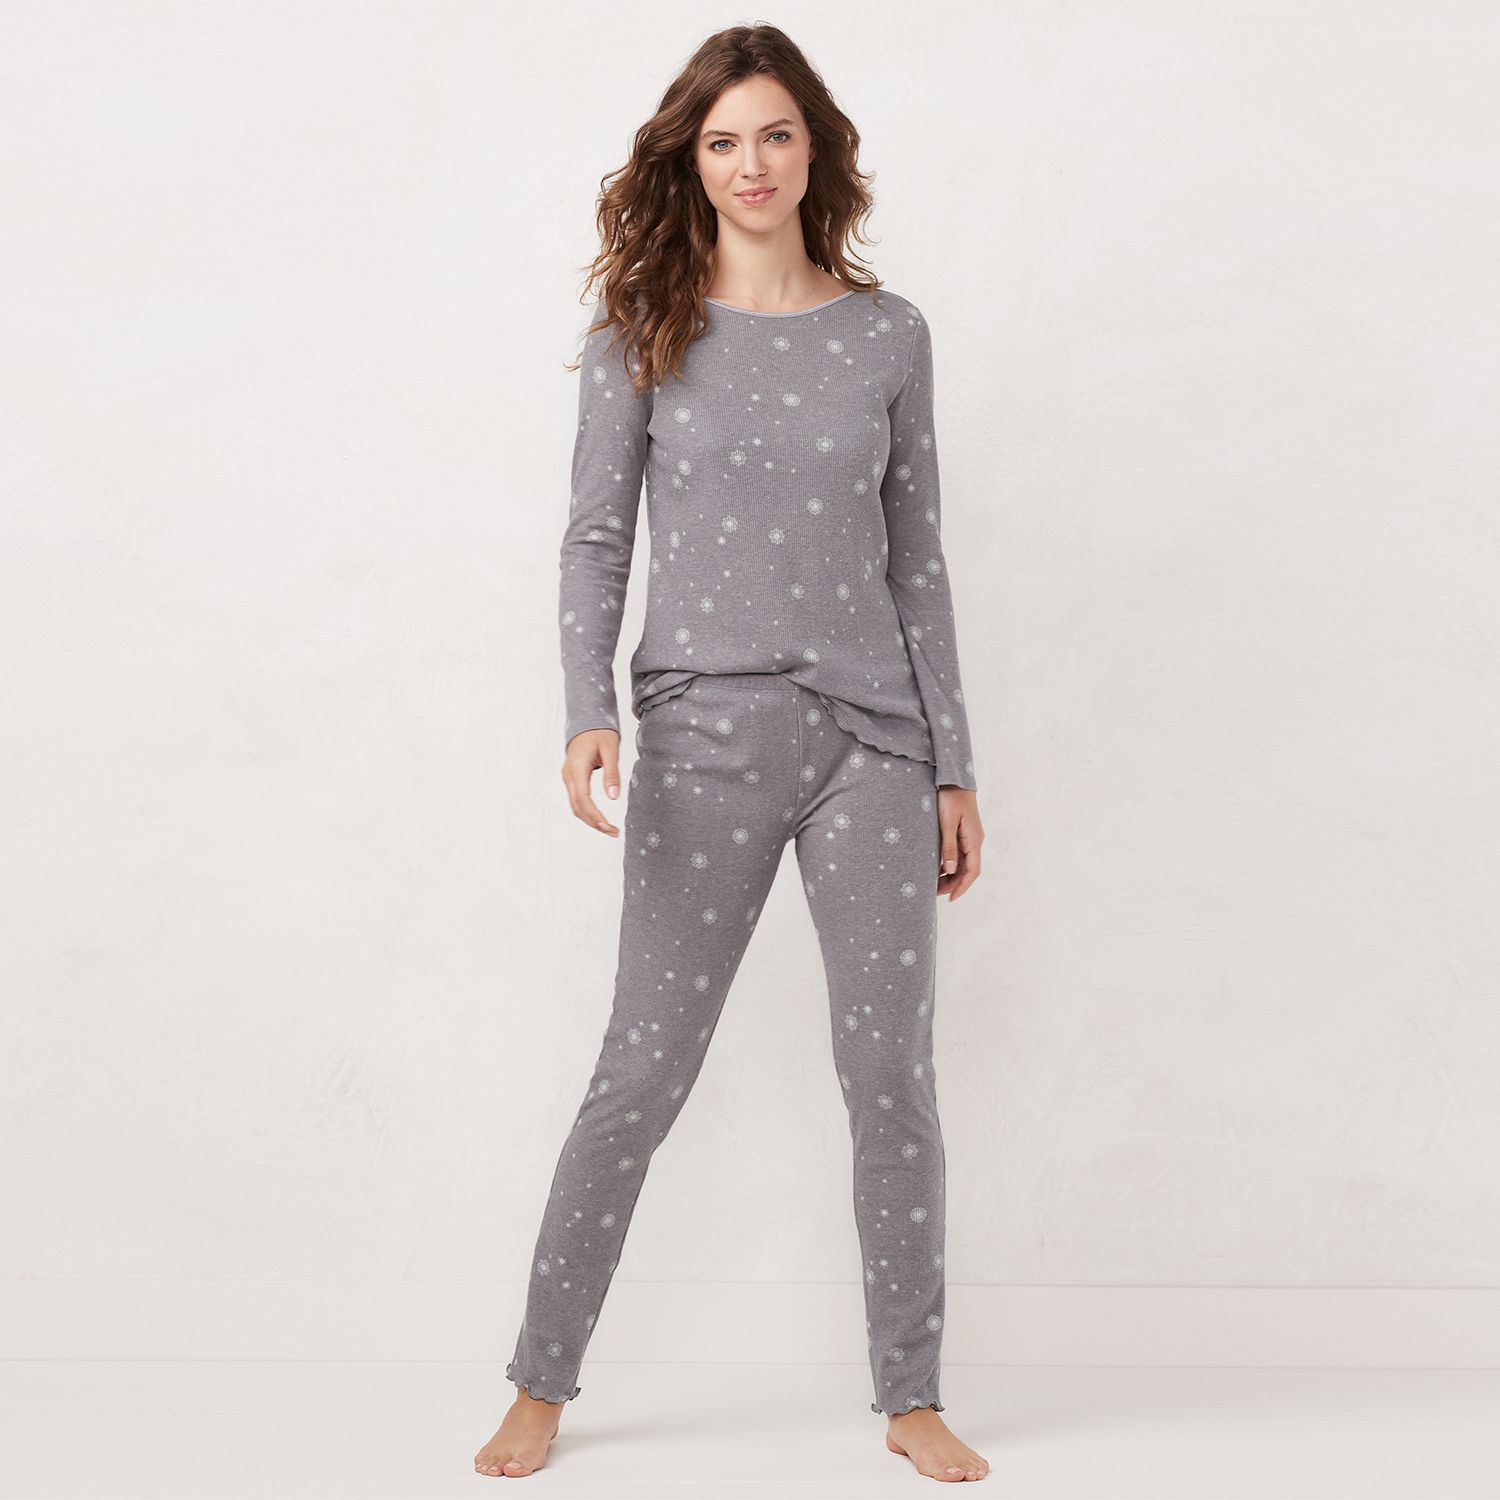 womens thermal pajamas